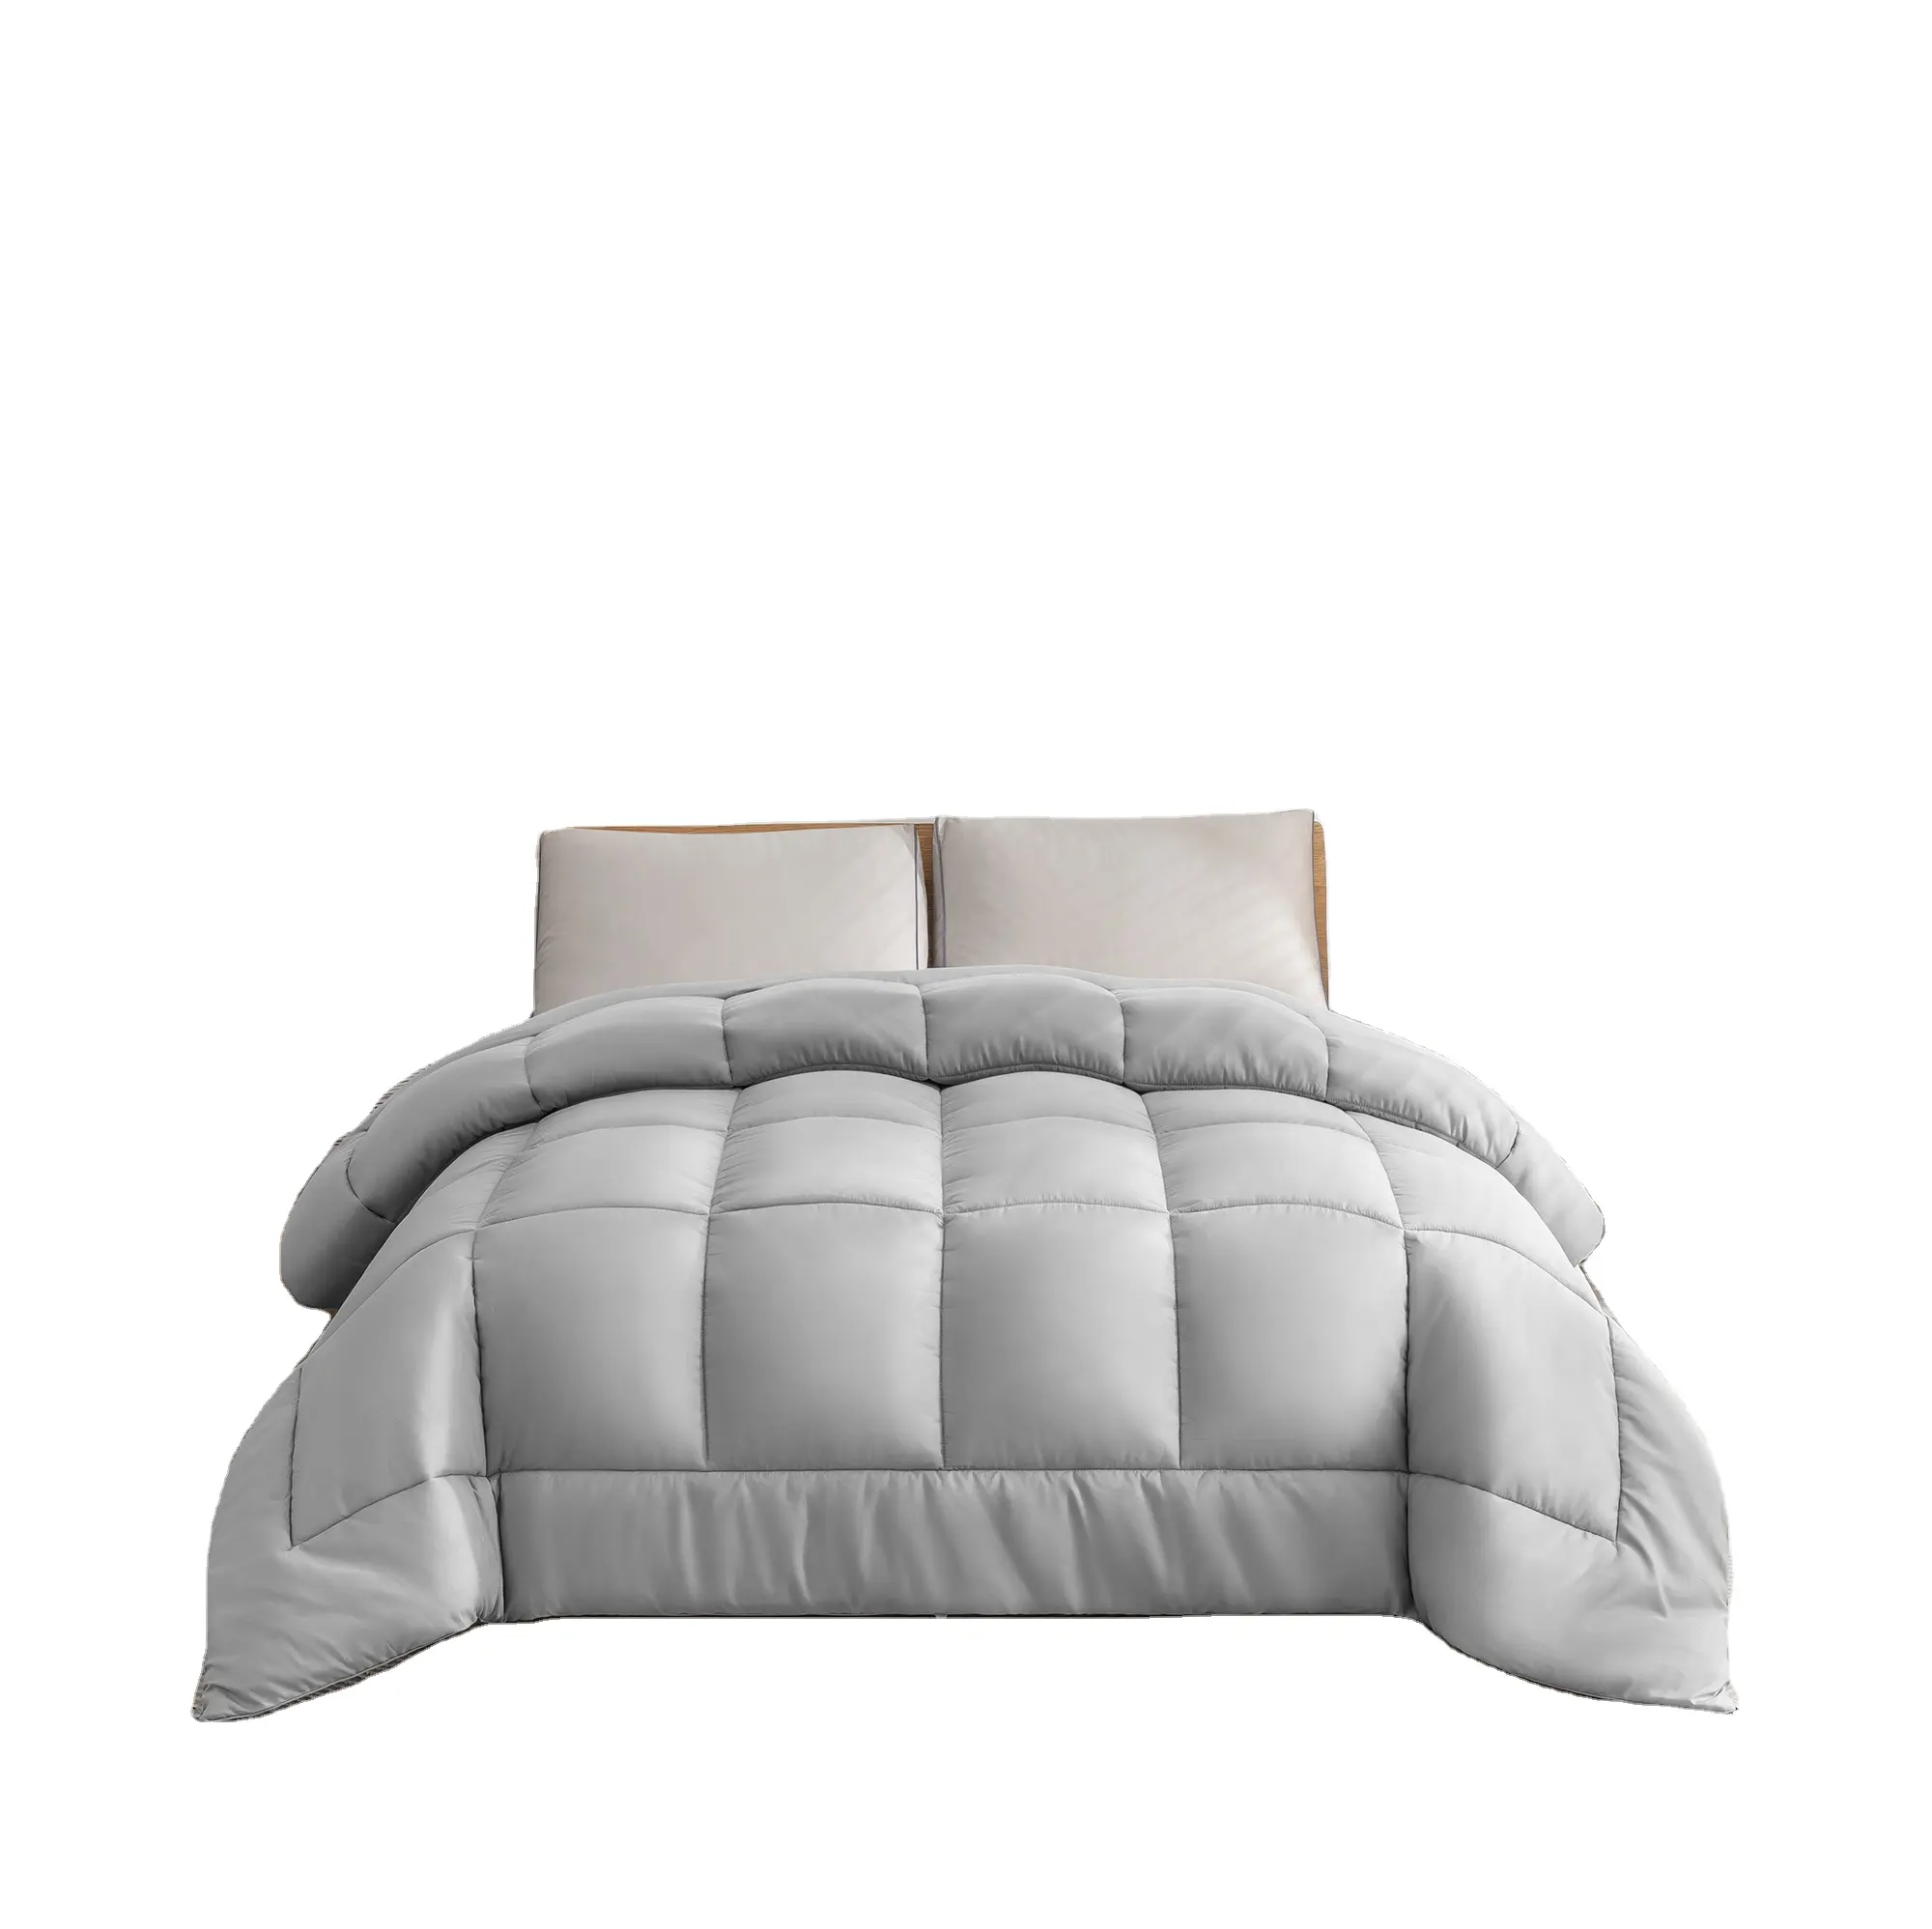 최신 기술 열전도 원리 숨구멍을 가진 빈 섬유 킹 사이즈 침대를 위한 침대 누비질을 위한 호텔 섬유 누비이불